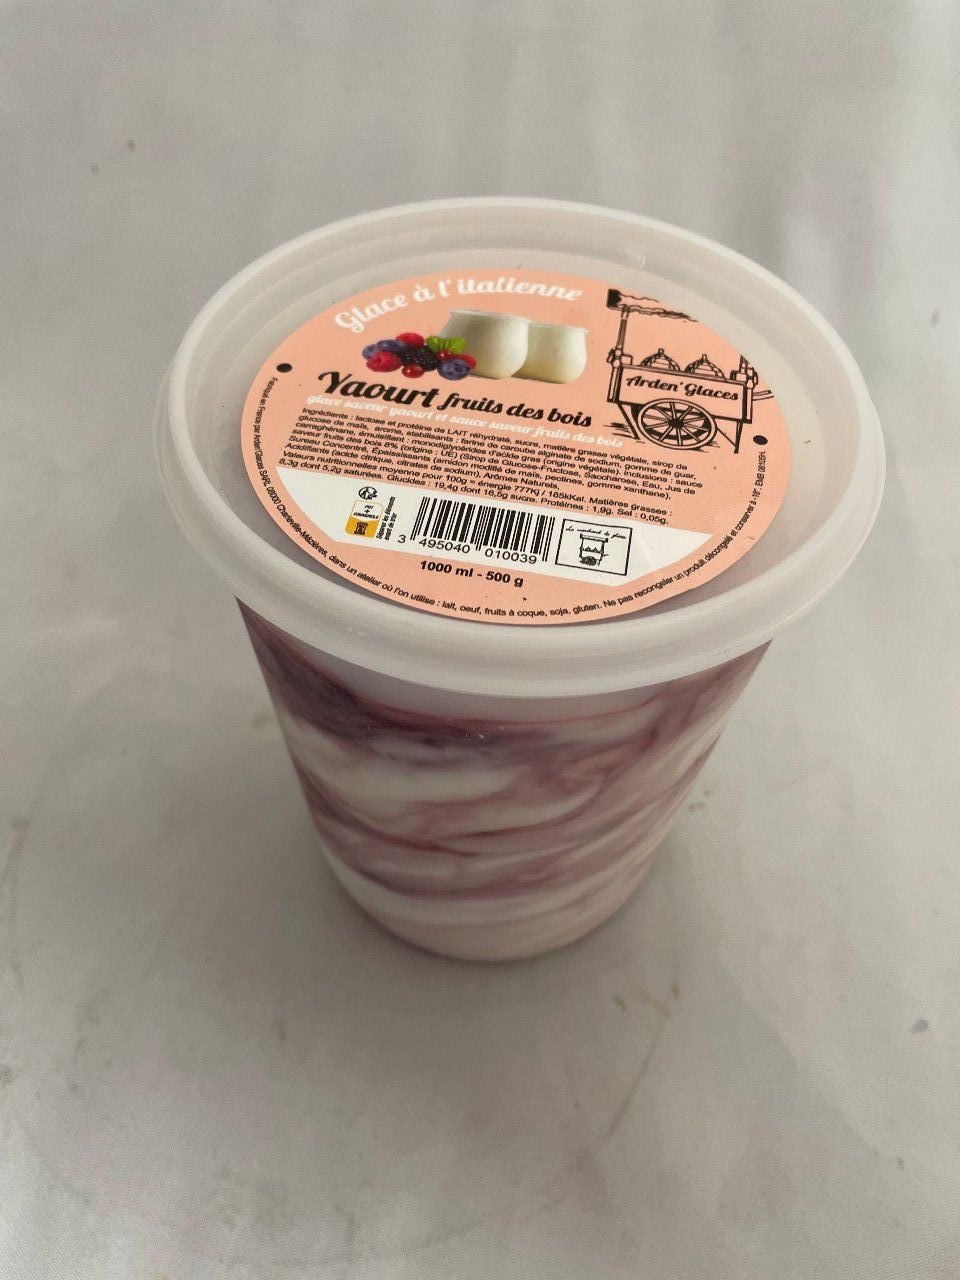 Glace à l'italienne yaourt fruits de bois 1 litre